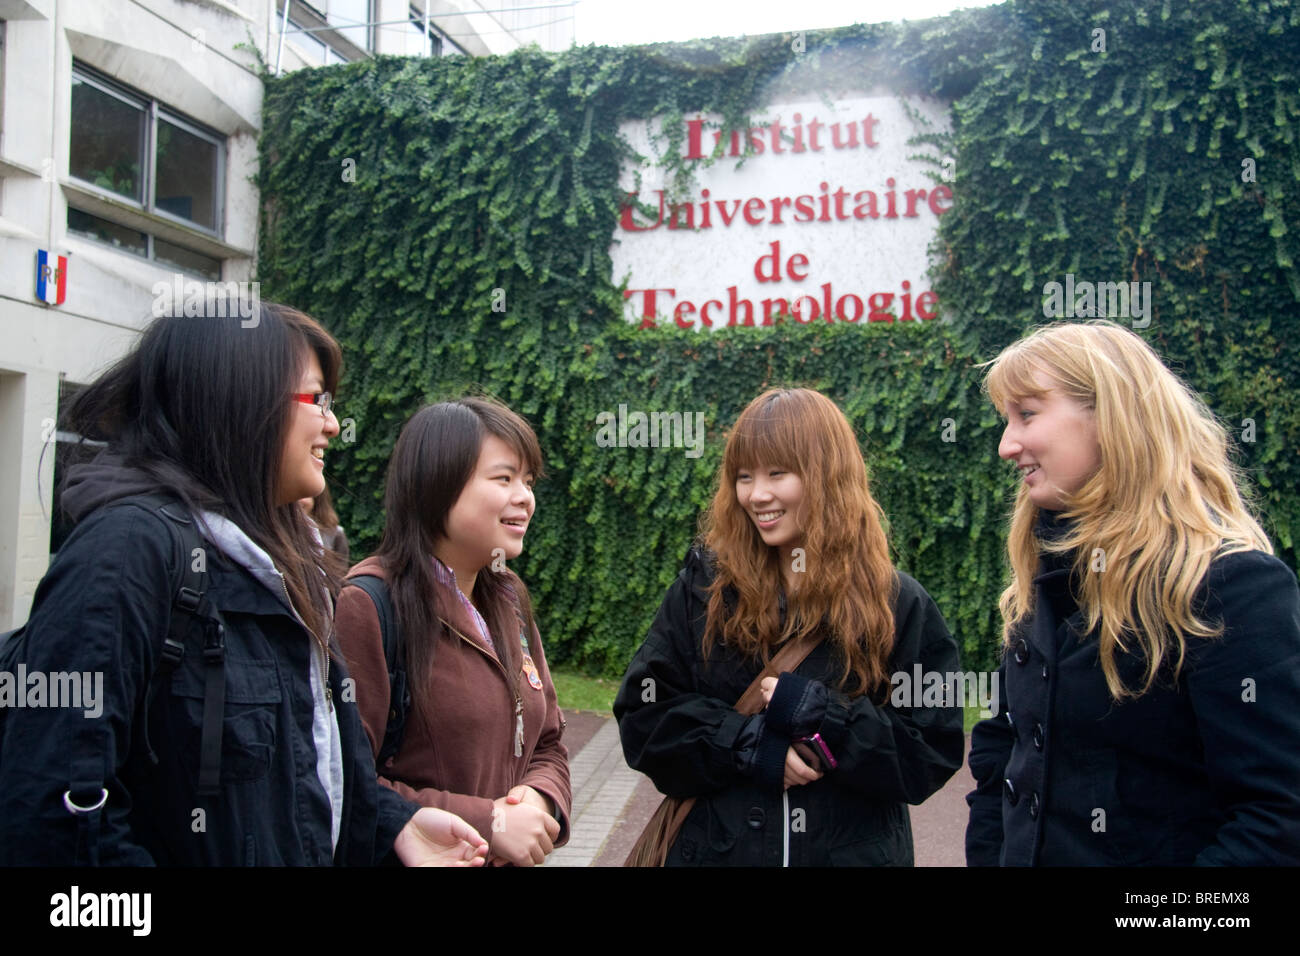 Les étudiantes se rencontrer en face de l'immeuble de la technologie de l'Université Paul Verlaine de Metz, France. Banque D'Images